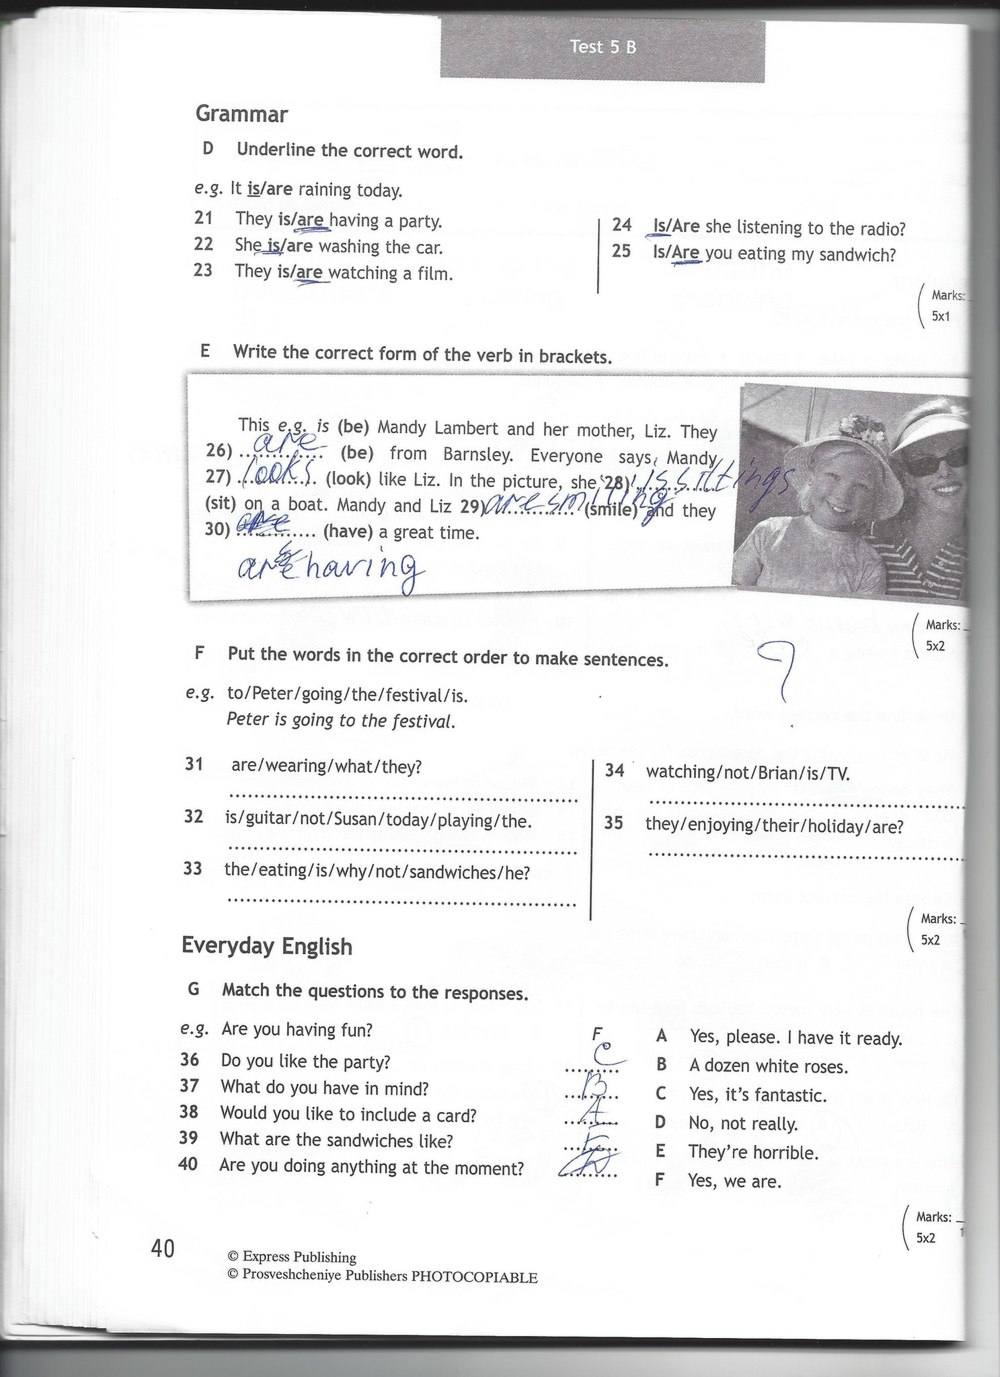 Тест по английскому шестой класс. Английский язык 5 класс тест буклет Spotlight 6 а. Английский язык 6 класс тест бук Spotlight 5b. 6 Класс английский язык Spotlight 6 модуль. Английский 6 класс ваулина кр 6 модуль.